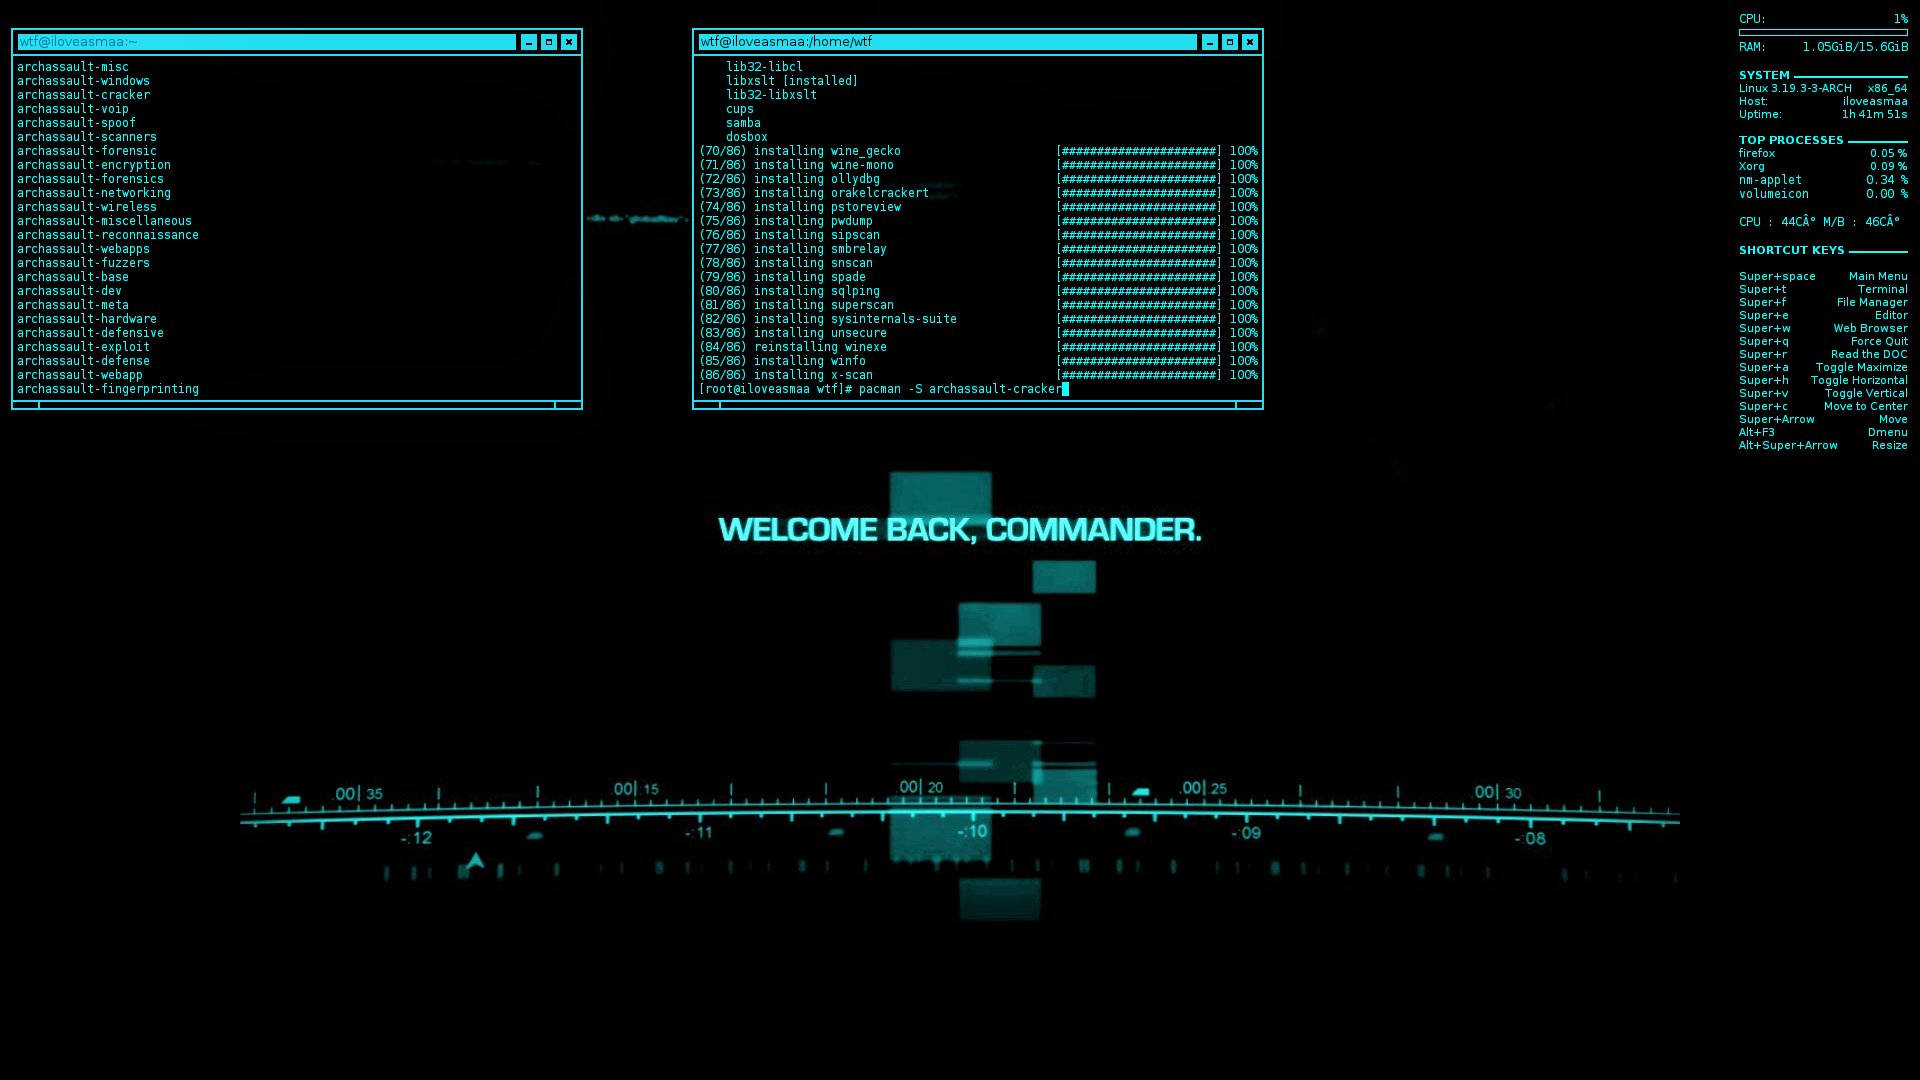 Download Hacker Screen Code Wallpaper 